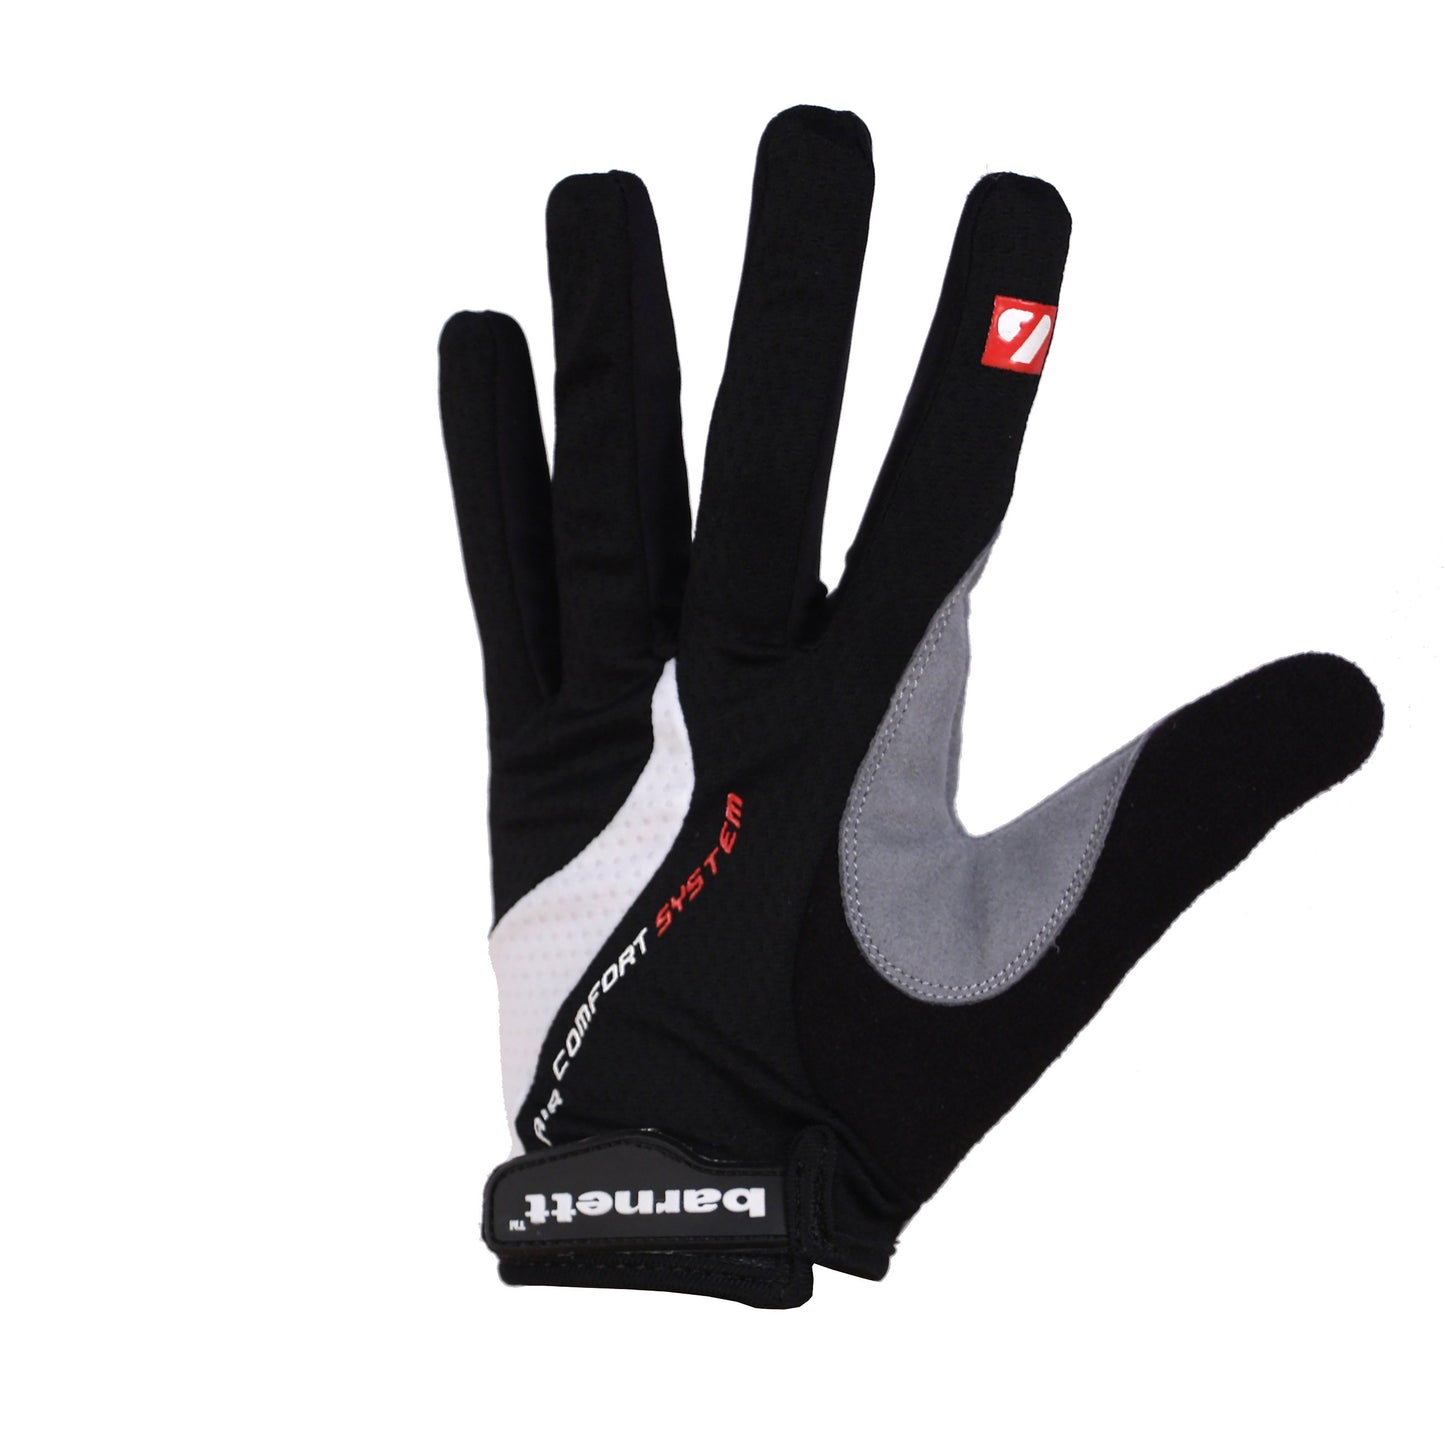 BG-01 Long bike gloves: Light, isolating, high-performance, White. Black